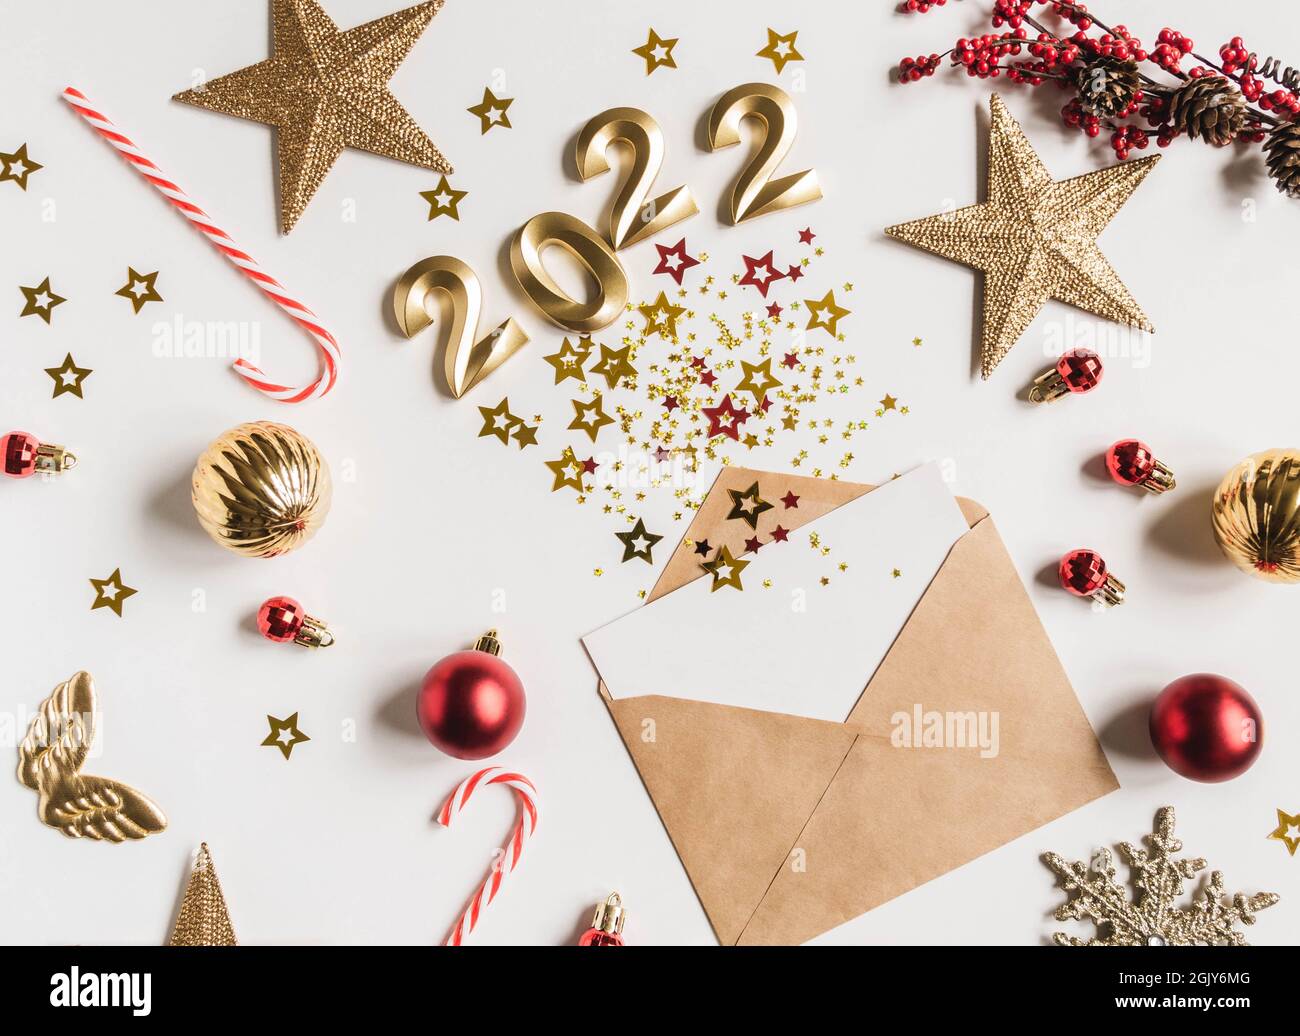 Sobre marrón abierto con tarjeta blanca en blanco y varias estrellas con los números de 2022 para el año siguiente imitación de explosión y festiva d temporada Foto de stock